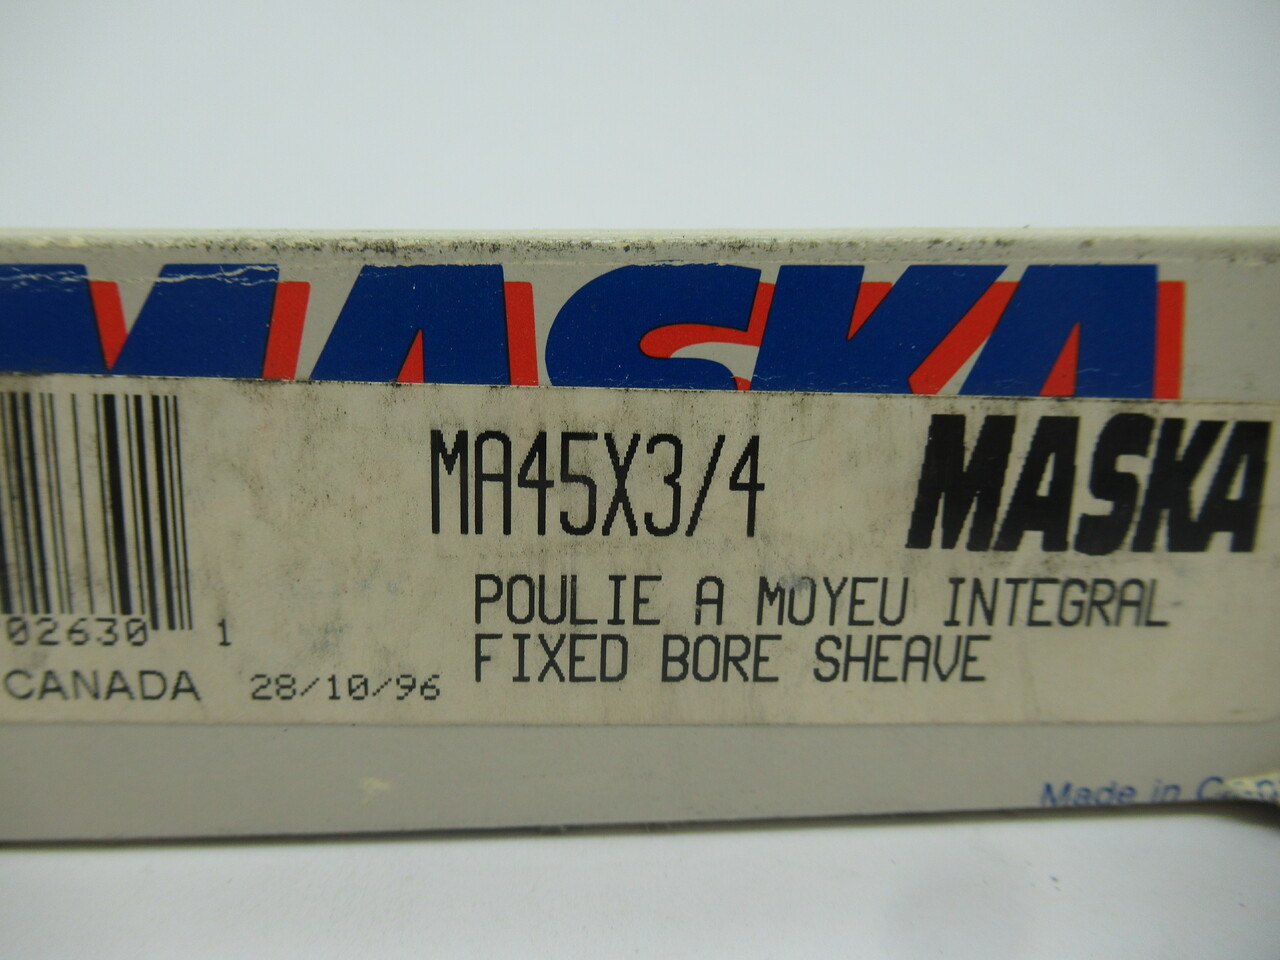 Maska MA45X3/4 Fixed Bore Sheave 3/4" Bore Cast Iron NEW